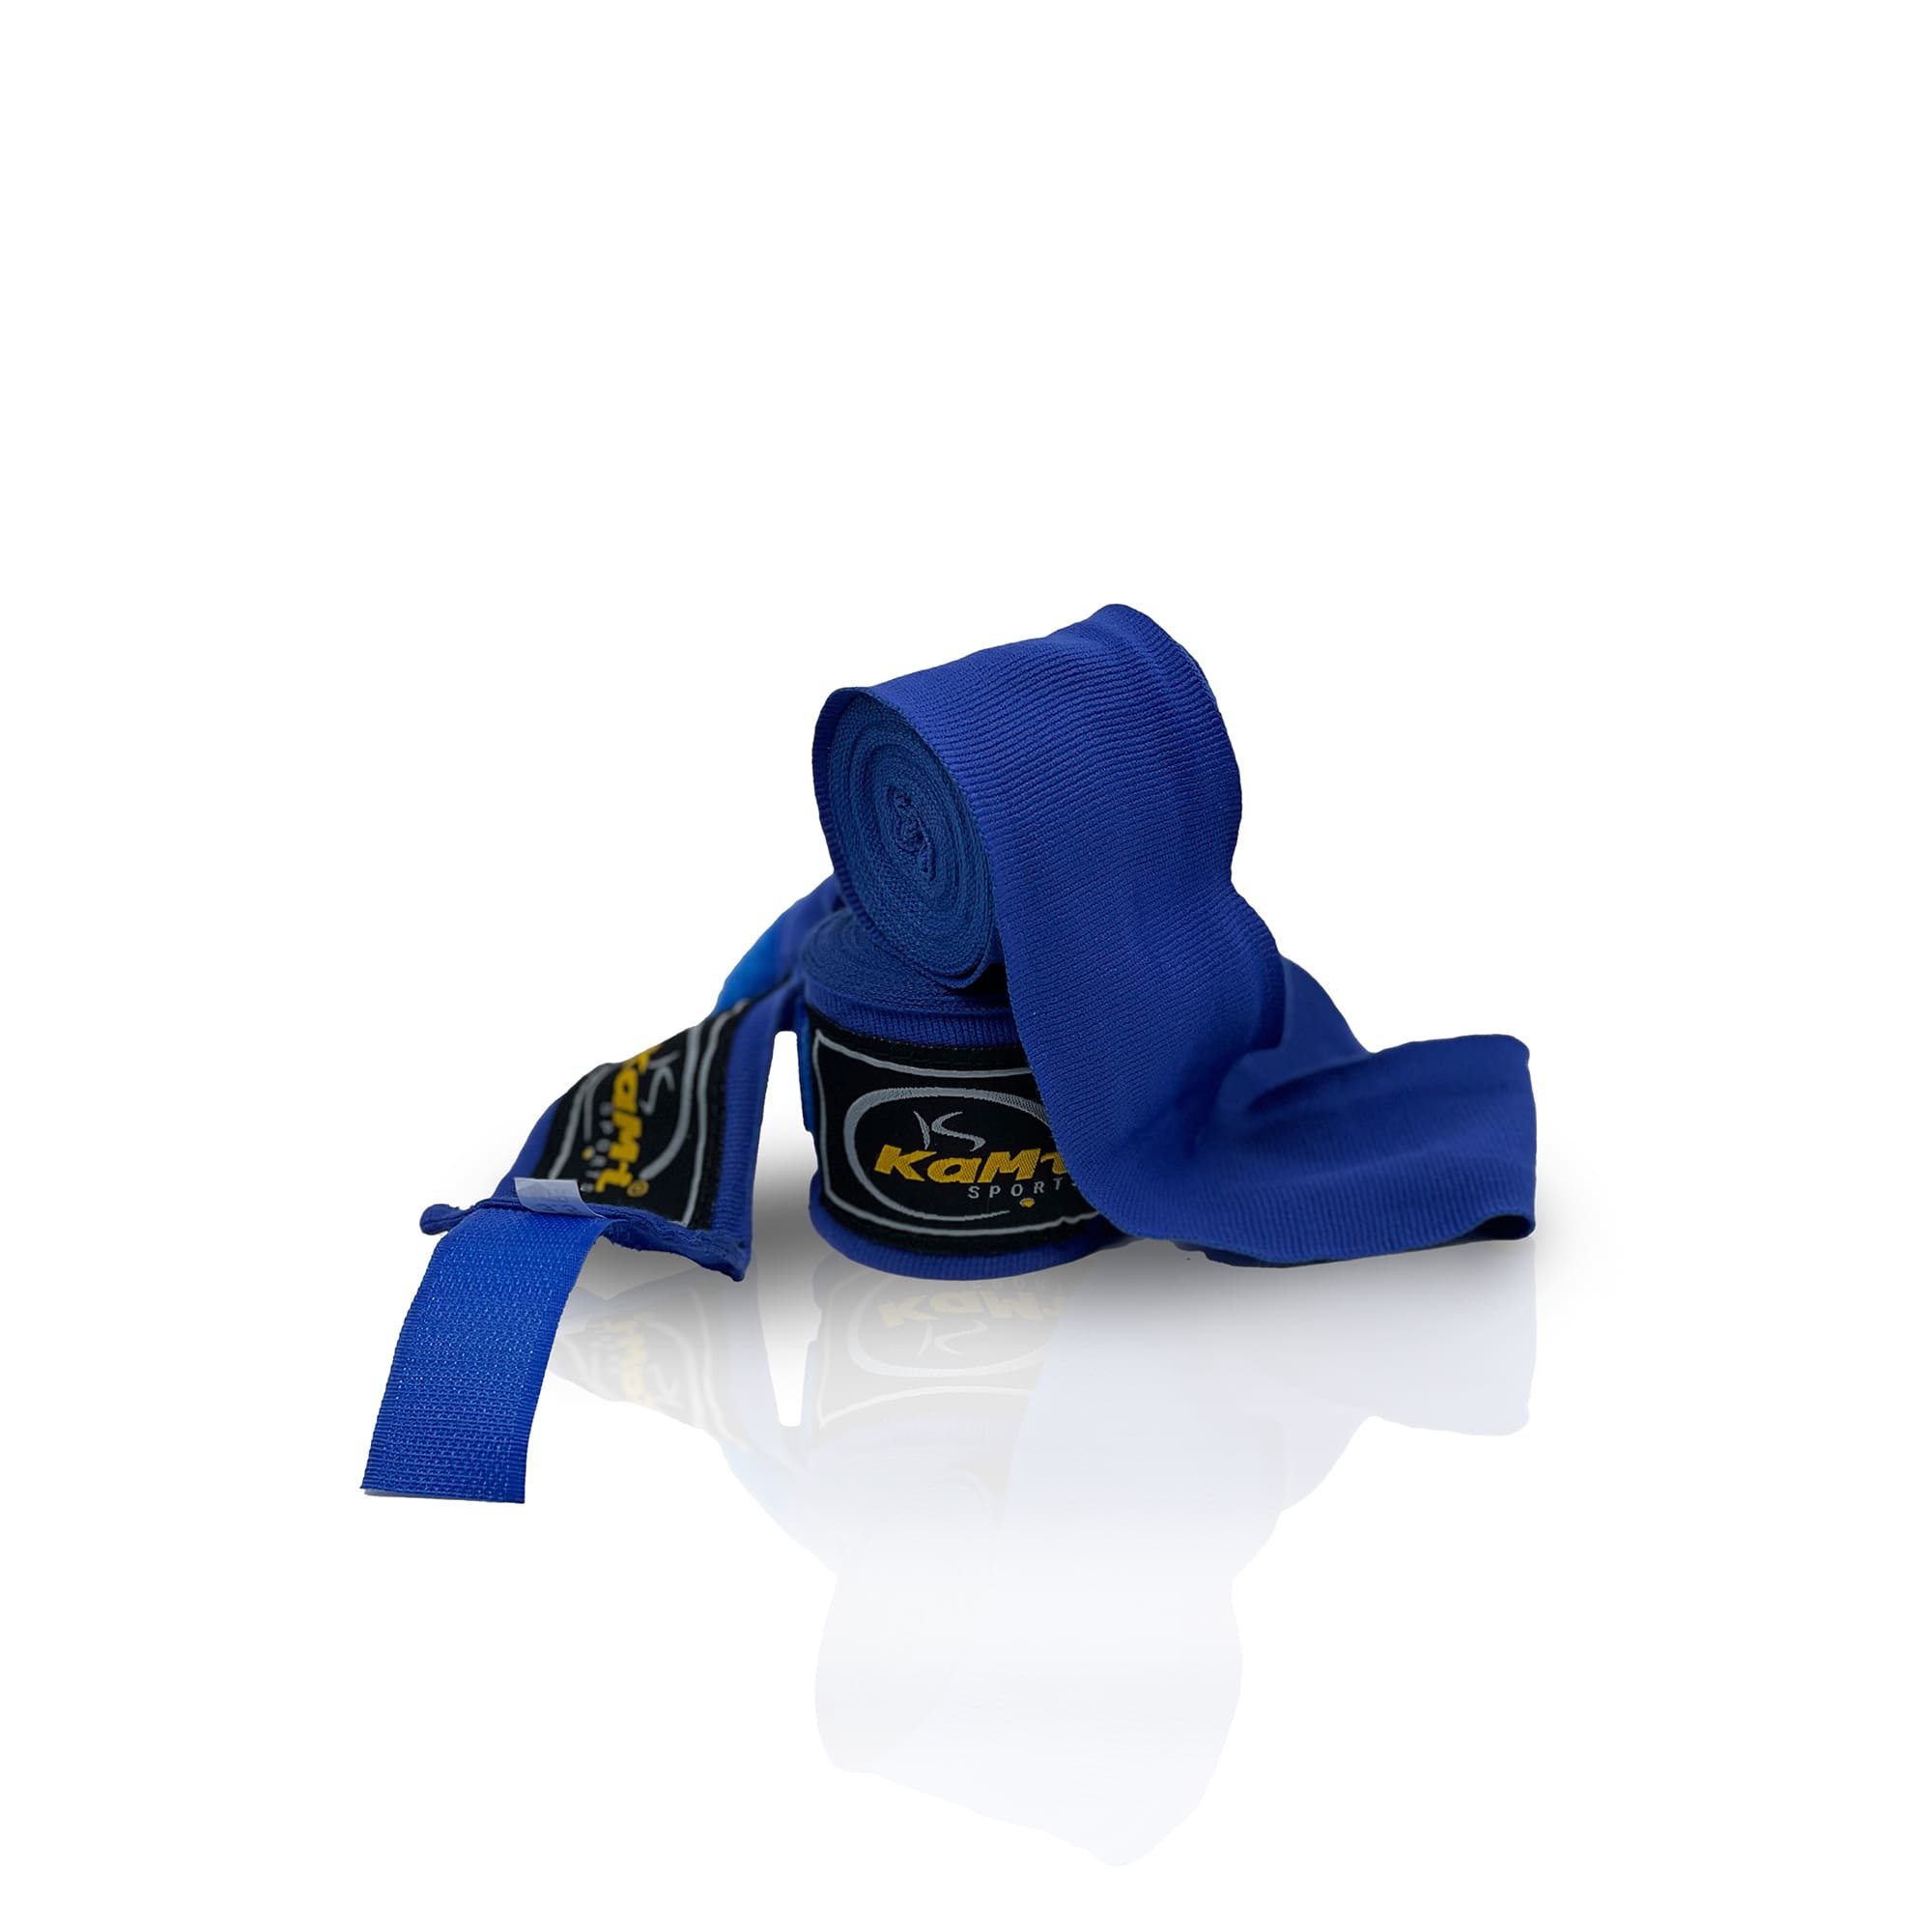 Produktansicht der blauen Boxbandage, speziell konzipiert zur Unterstützung und zum Schutz der Hände und Handgelenke im Kampfsport. Hochwertiges Material sorgt für Langlebigkeit und Komfort, während das flexible Design eine individuelle Passform ermöglicht.